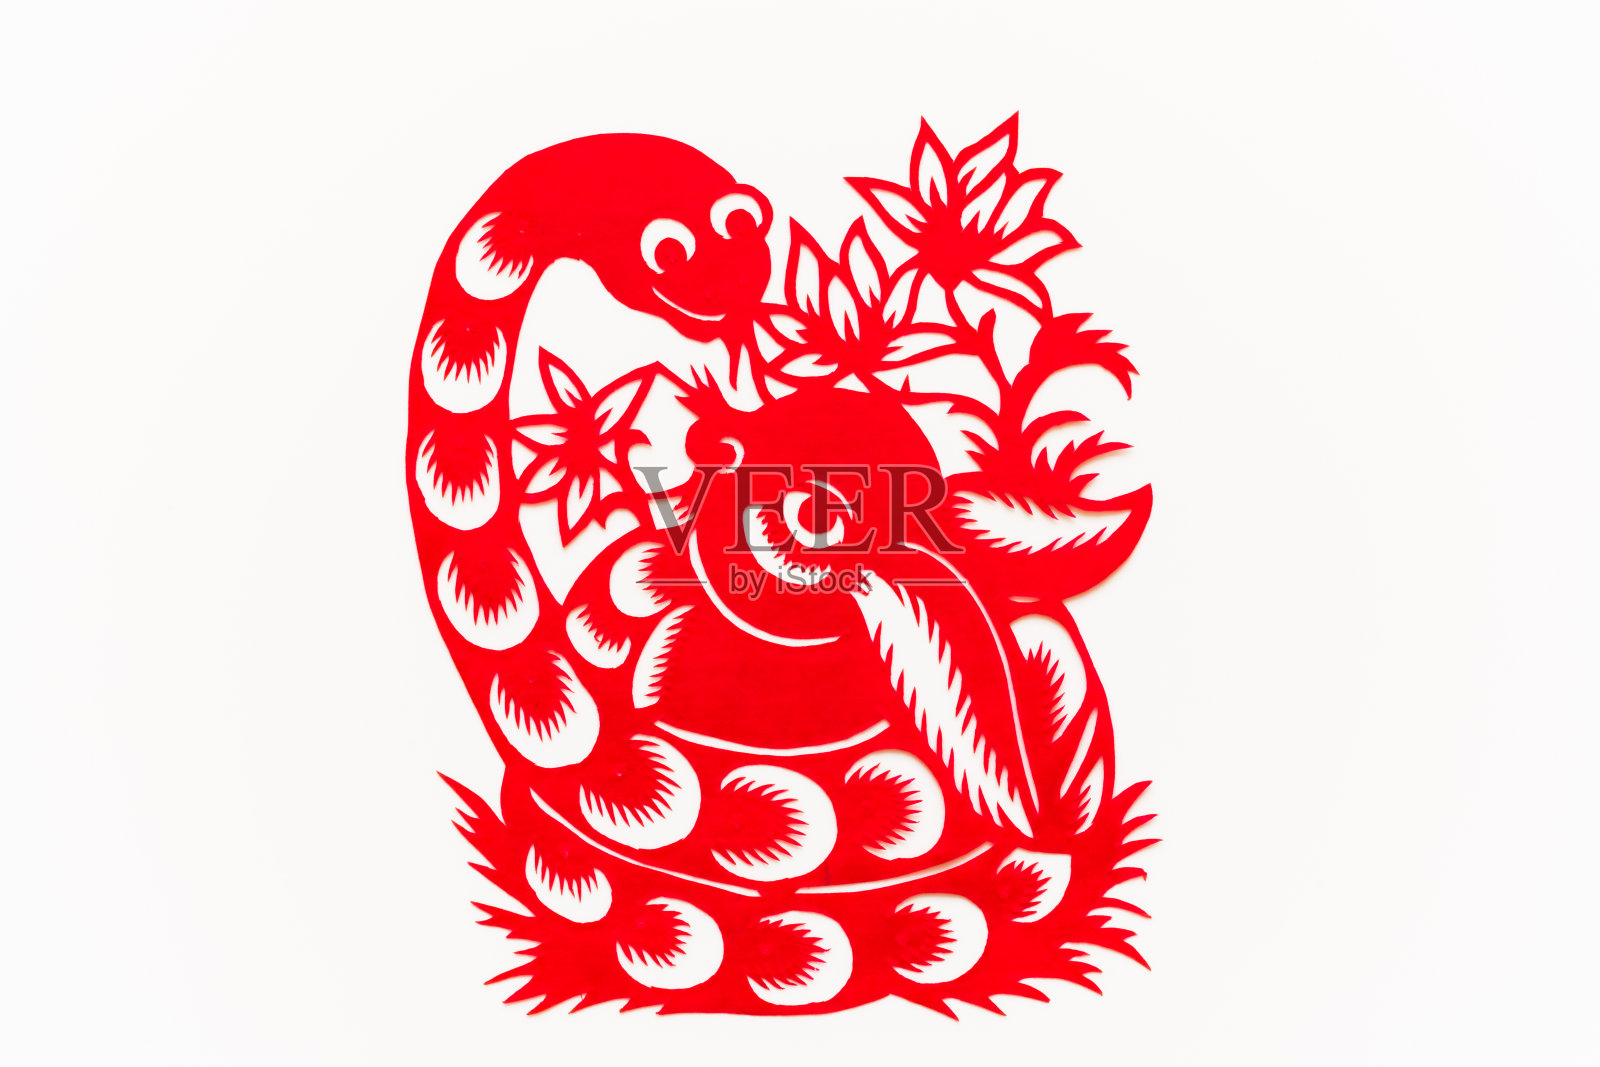 中国传统剪纸，十二生肖。中国新年，蛇年。中国动物蛇的传统剪纸艺术图案。蛇剪纸，过年。插画图片素材